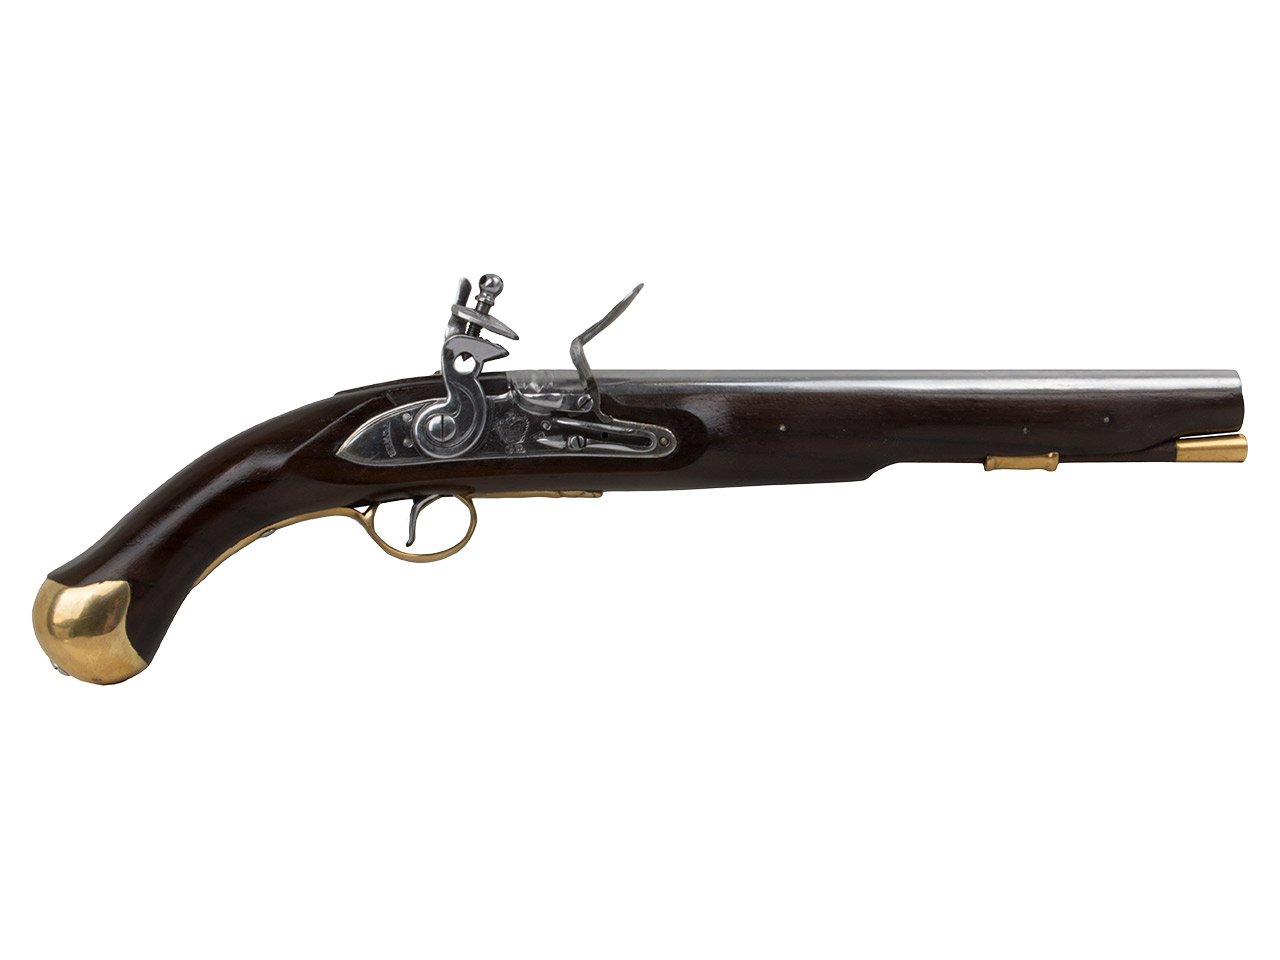 Vorderlader Steinschlosspistole British Royal Navy Sea Service Pistol Pattern 1756 Kaliber .64 bzw. 16,2 mm (P18)